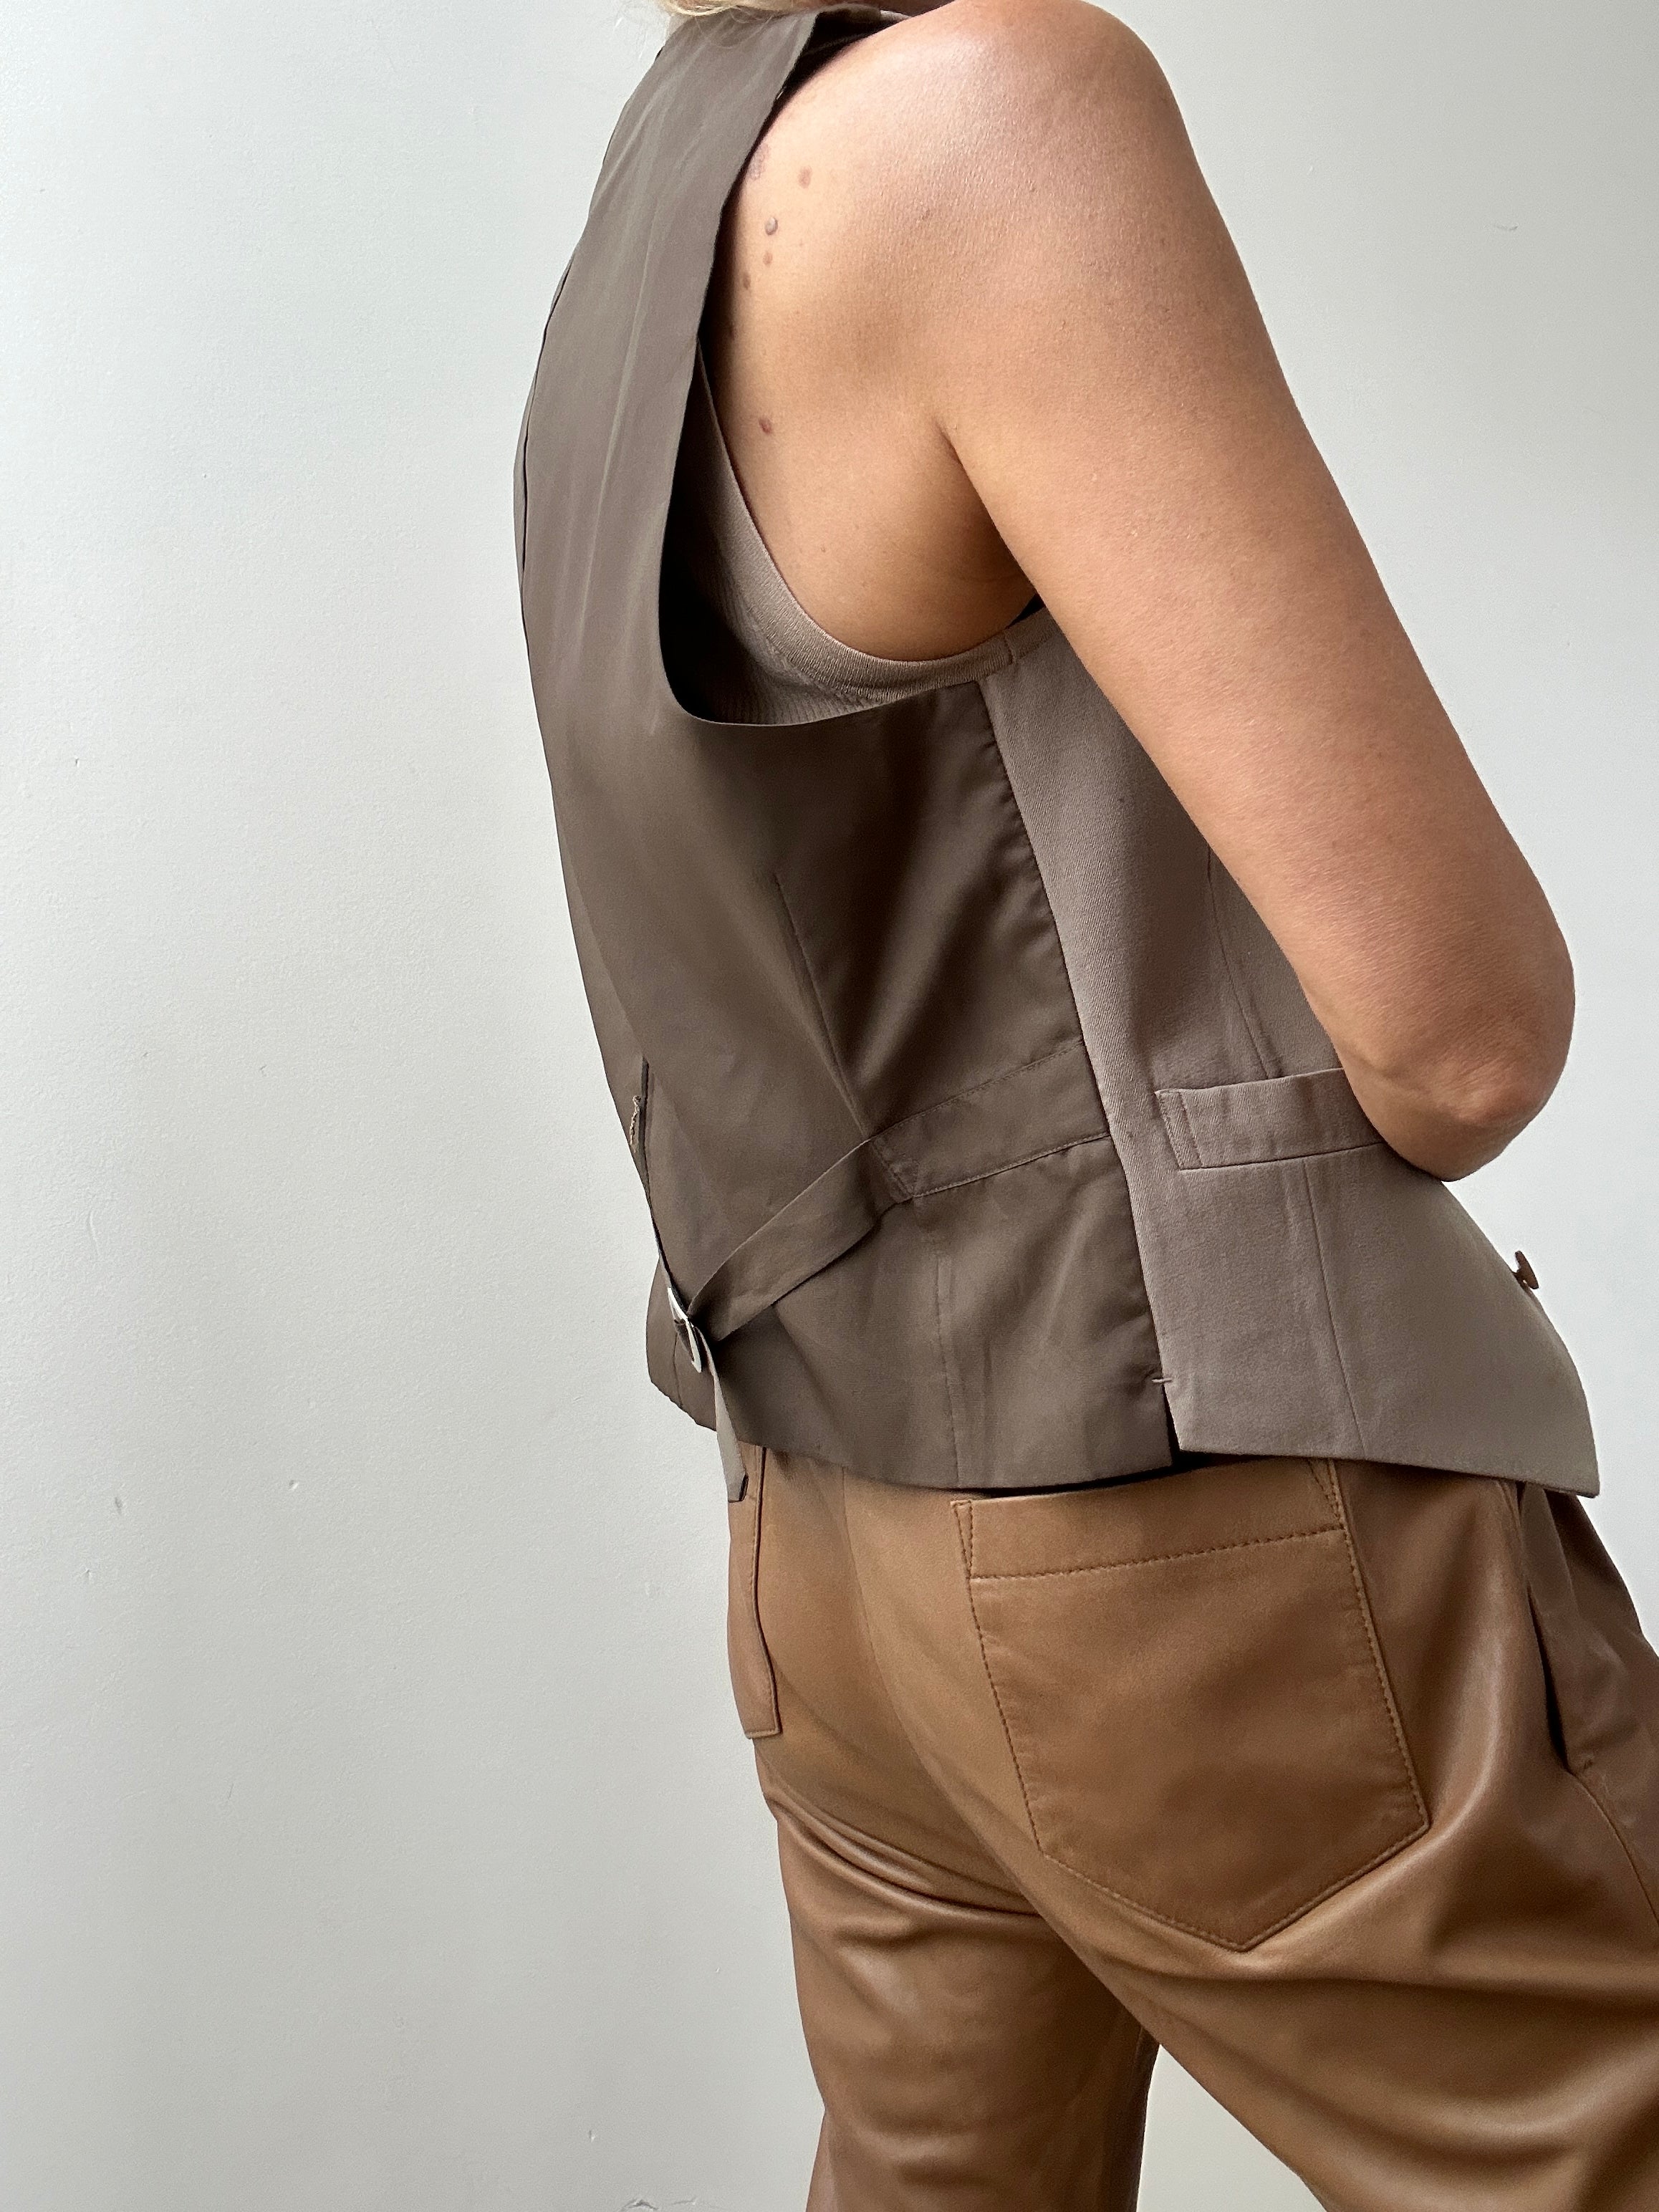 Future Nomads Vests Small Vintage Suit Vest Tan Beige